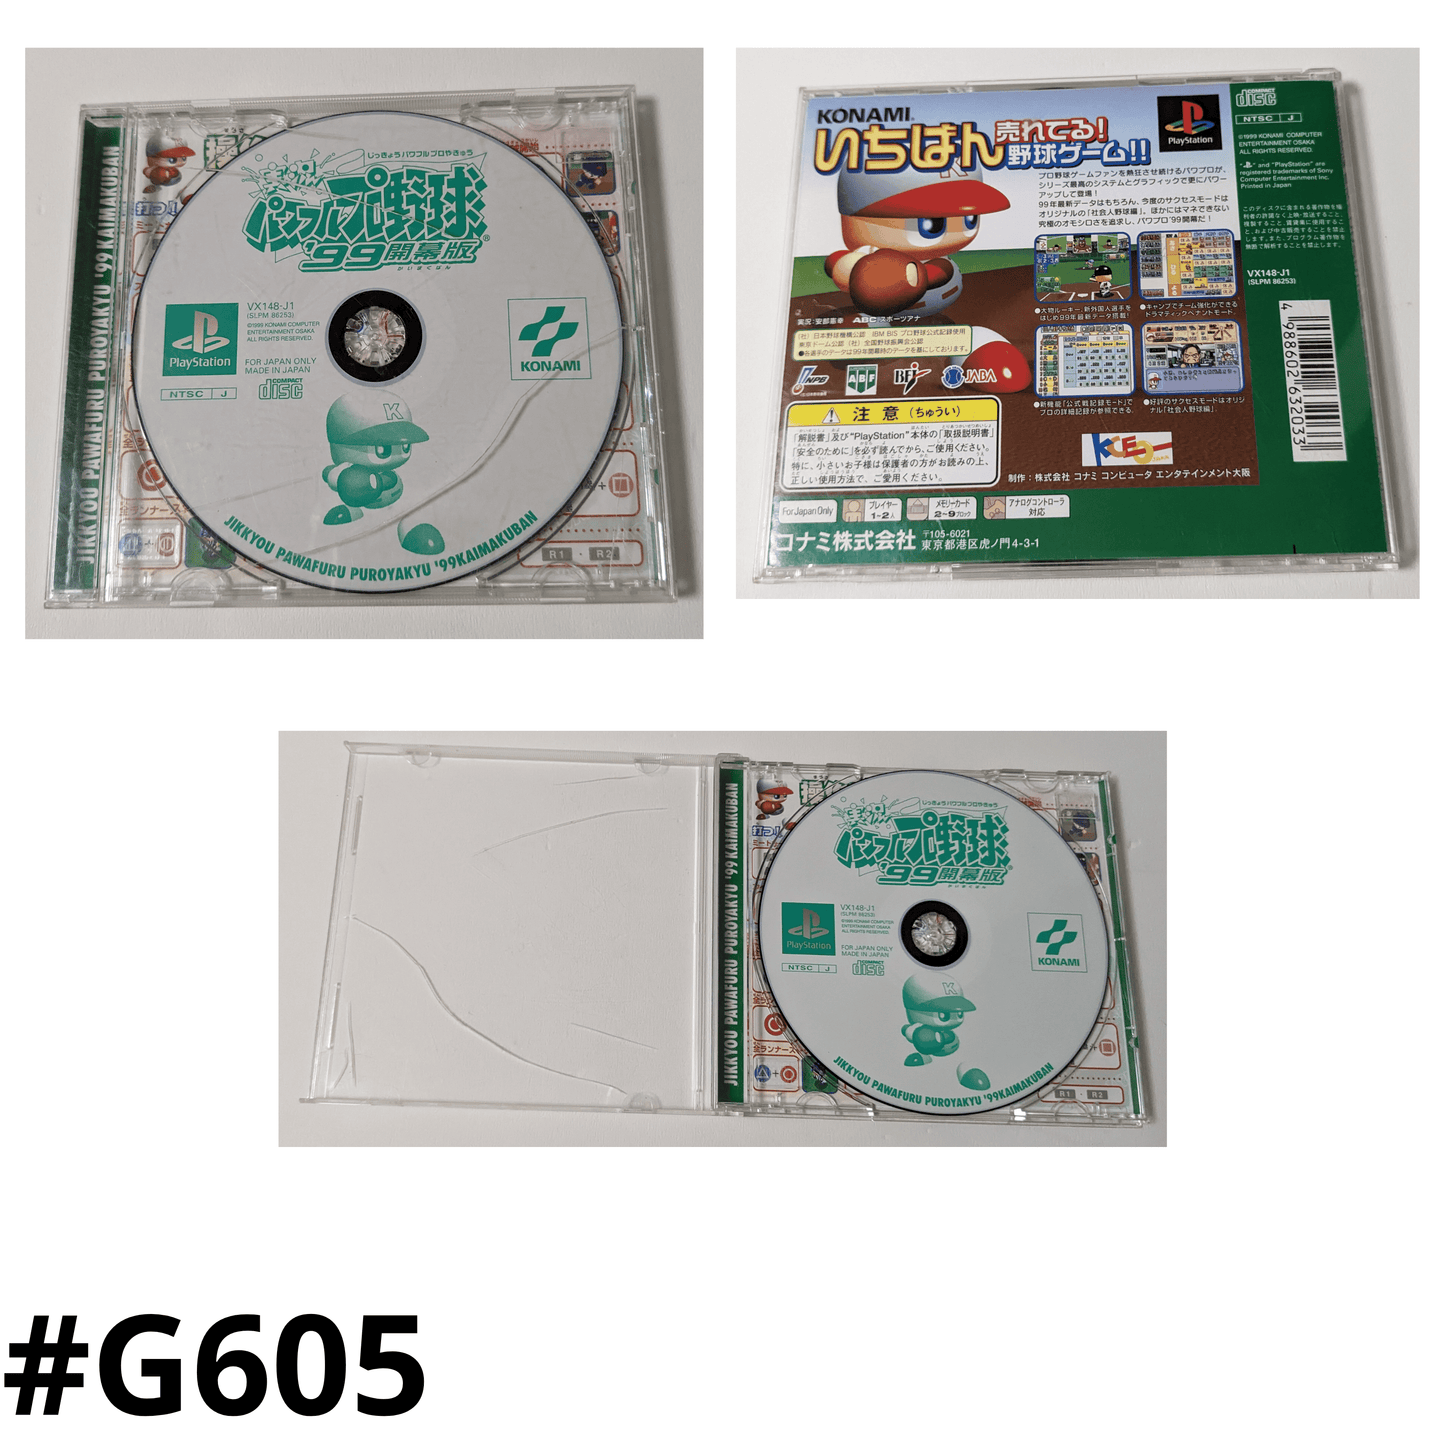 Jikkyou Powerful Pro Yakyu 99 | PlayStation 1 | Japanese